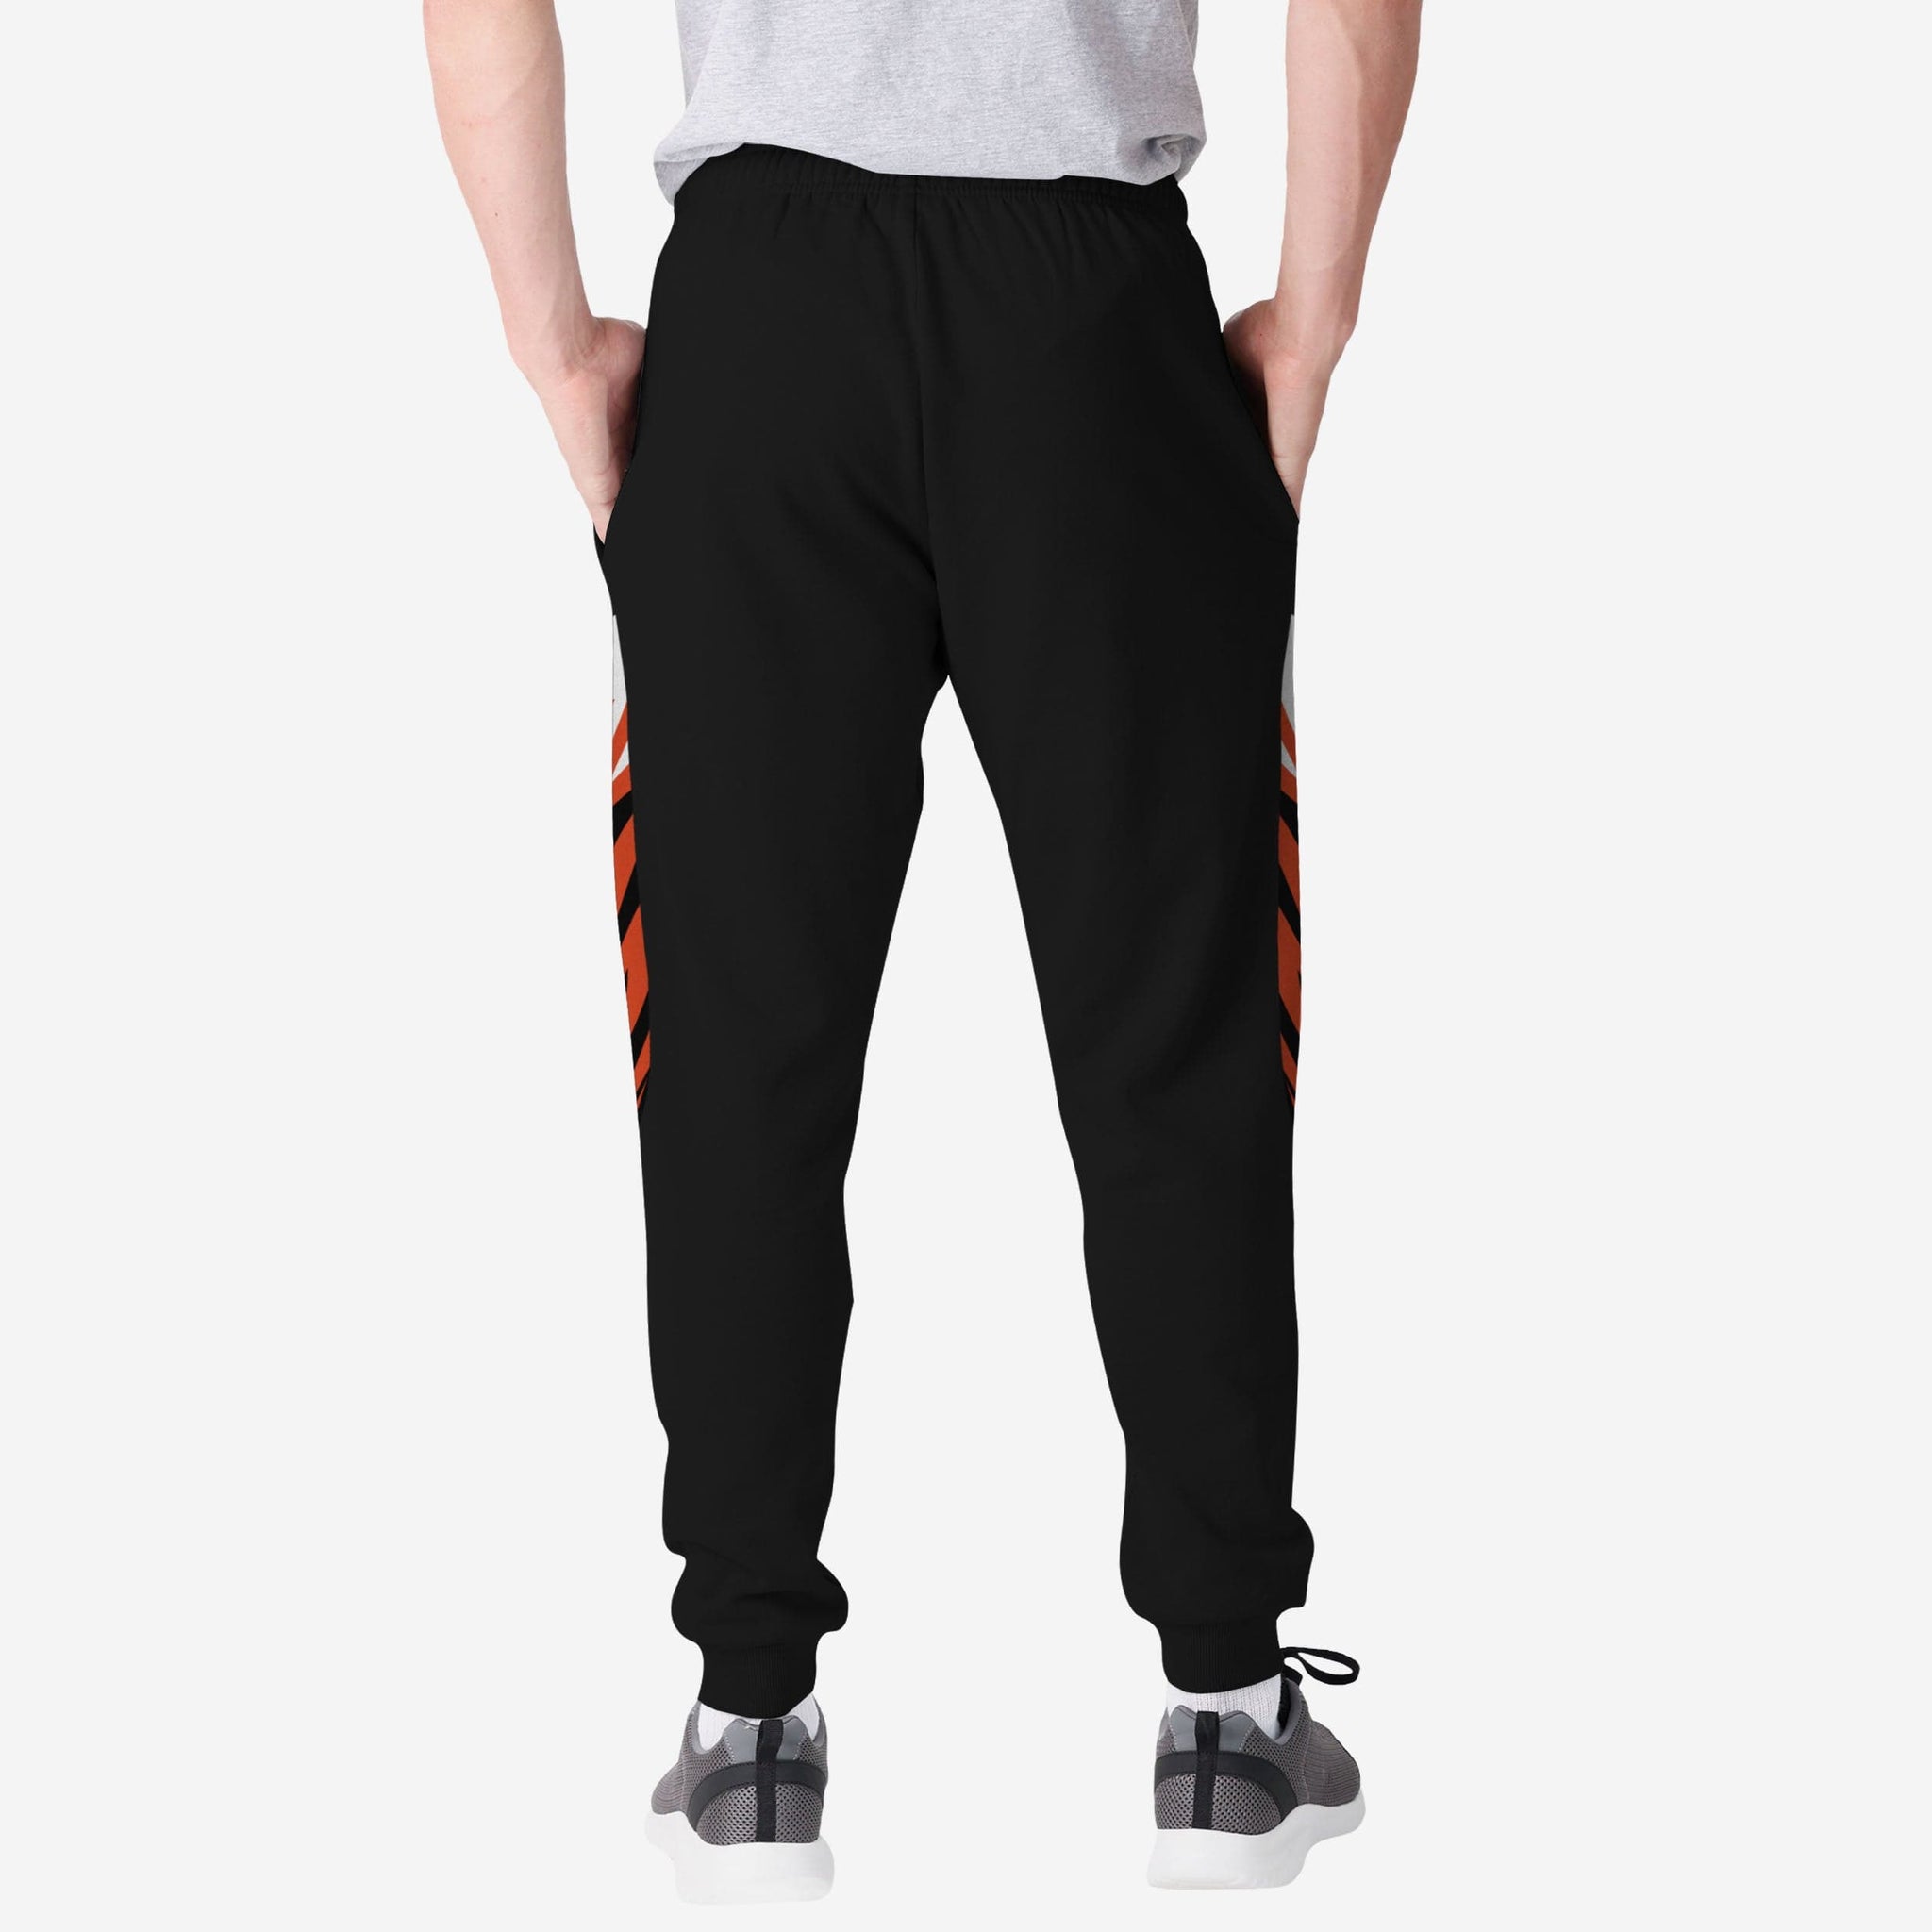 louisville jogger pants for men